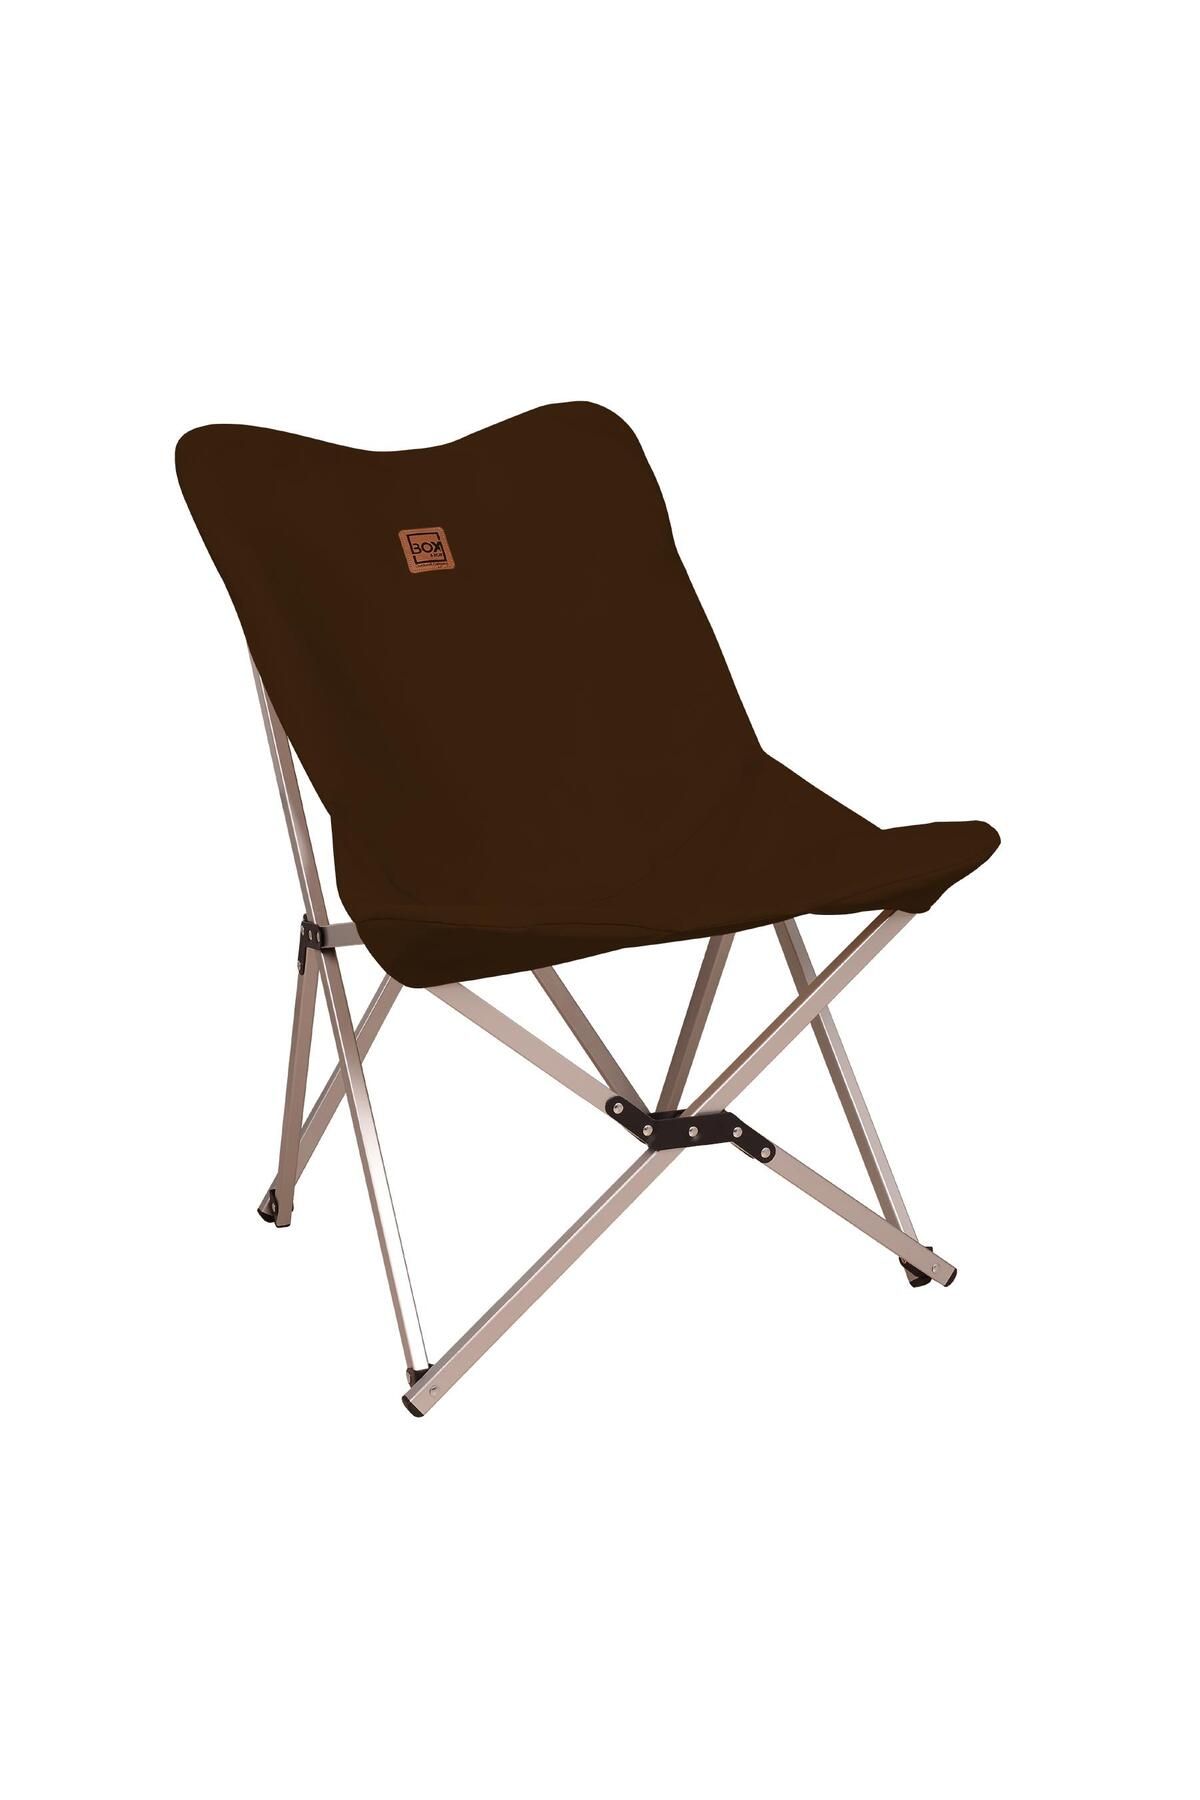 Box&Box Alüminyum Katlanabilir Kamp Sandalyesi, Piknik Sandalyesi, Taşıma Çantalı, Kumaş, Kahverengi